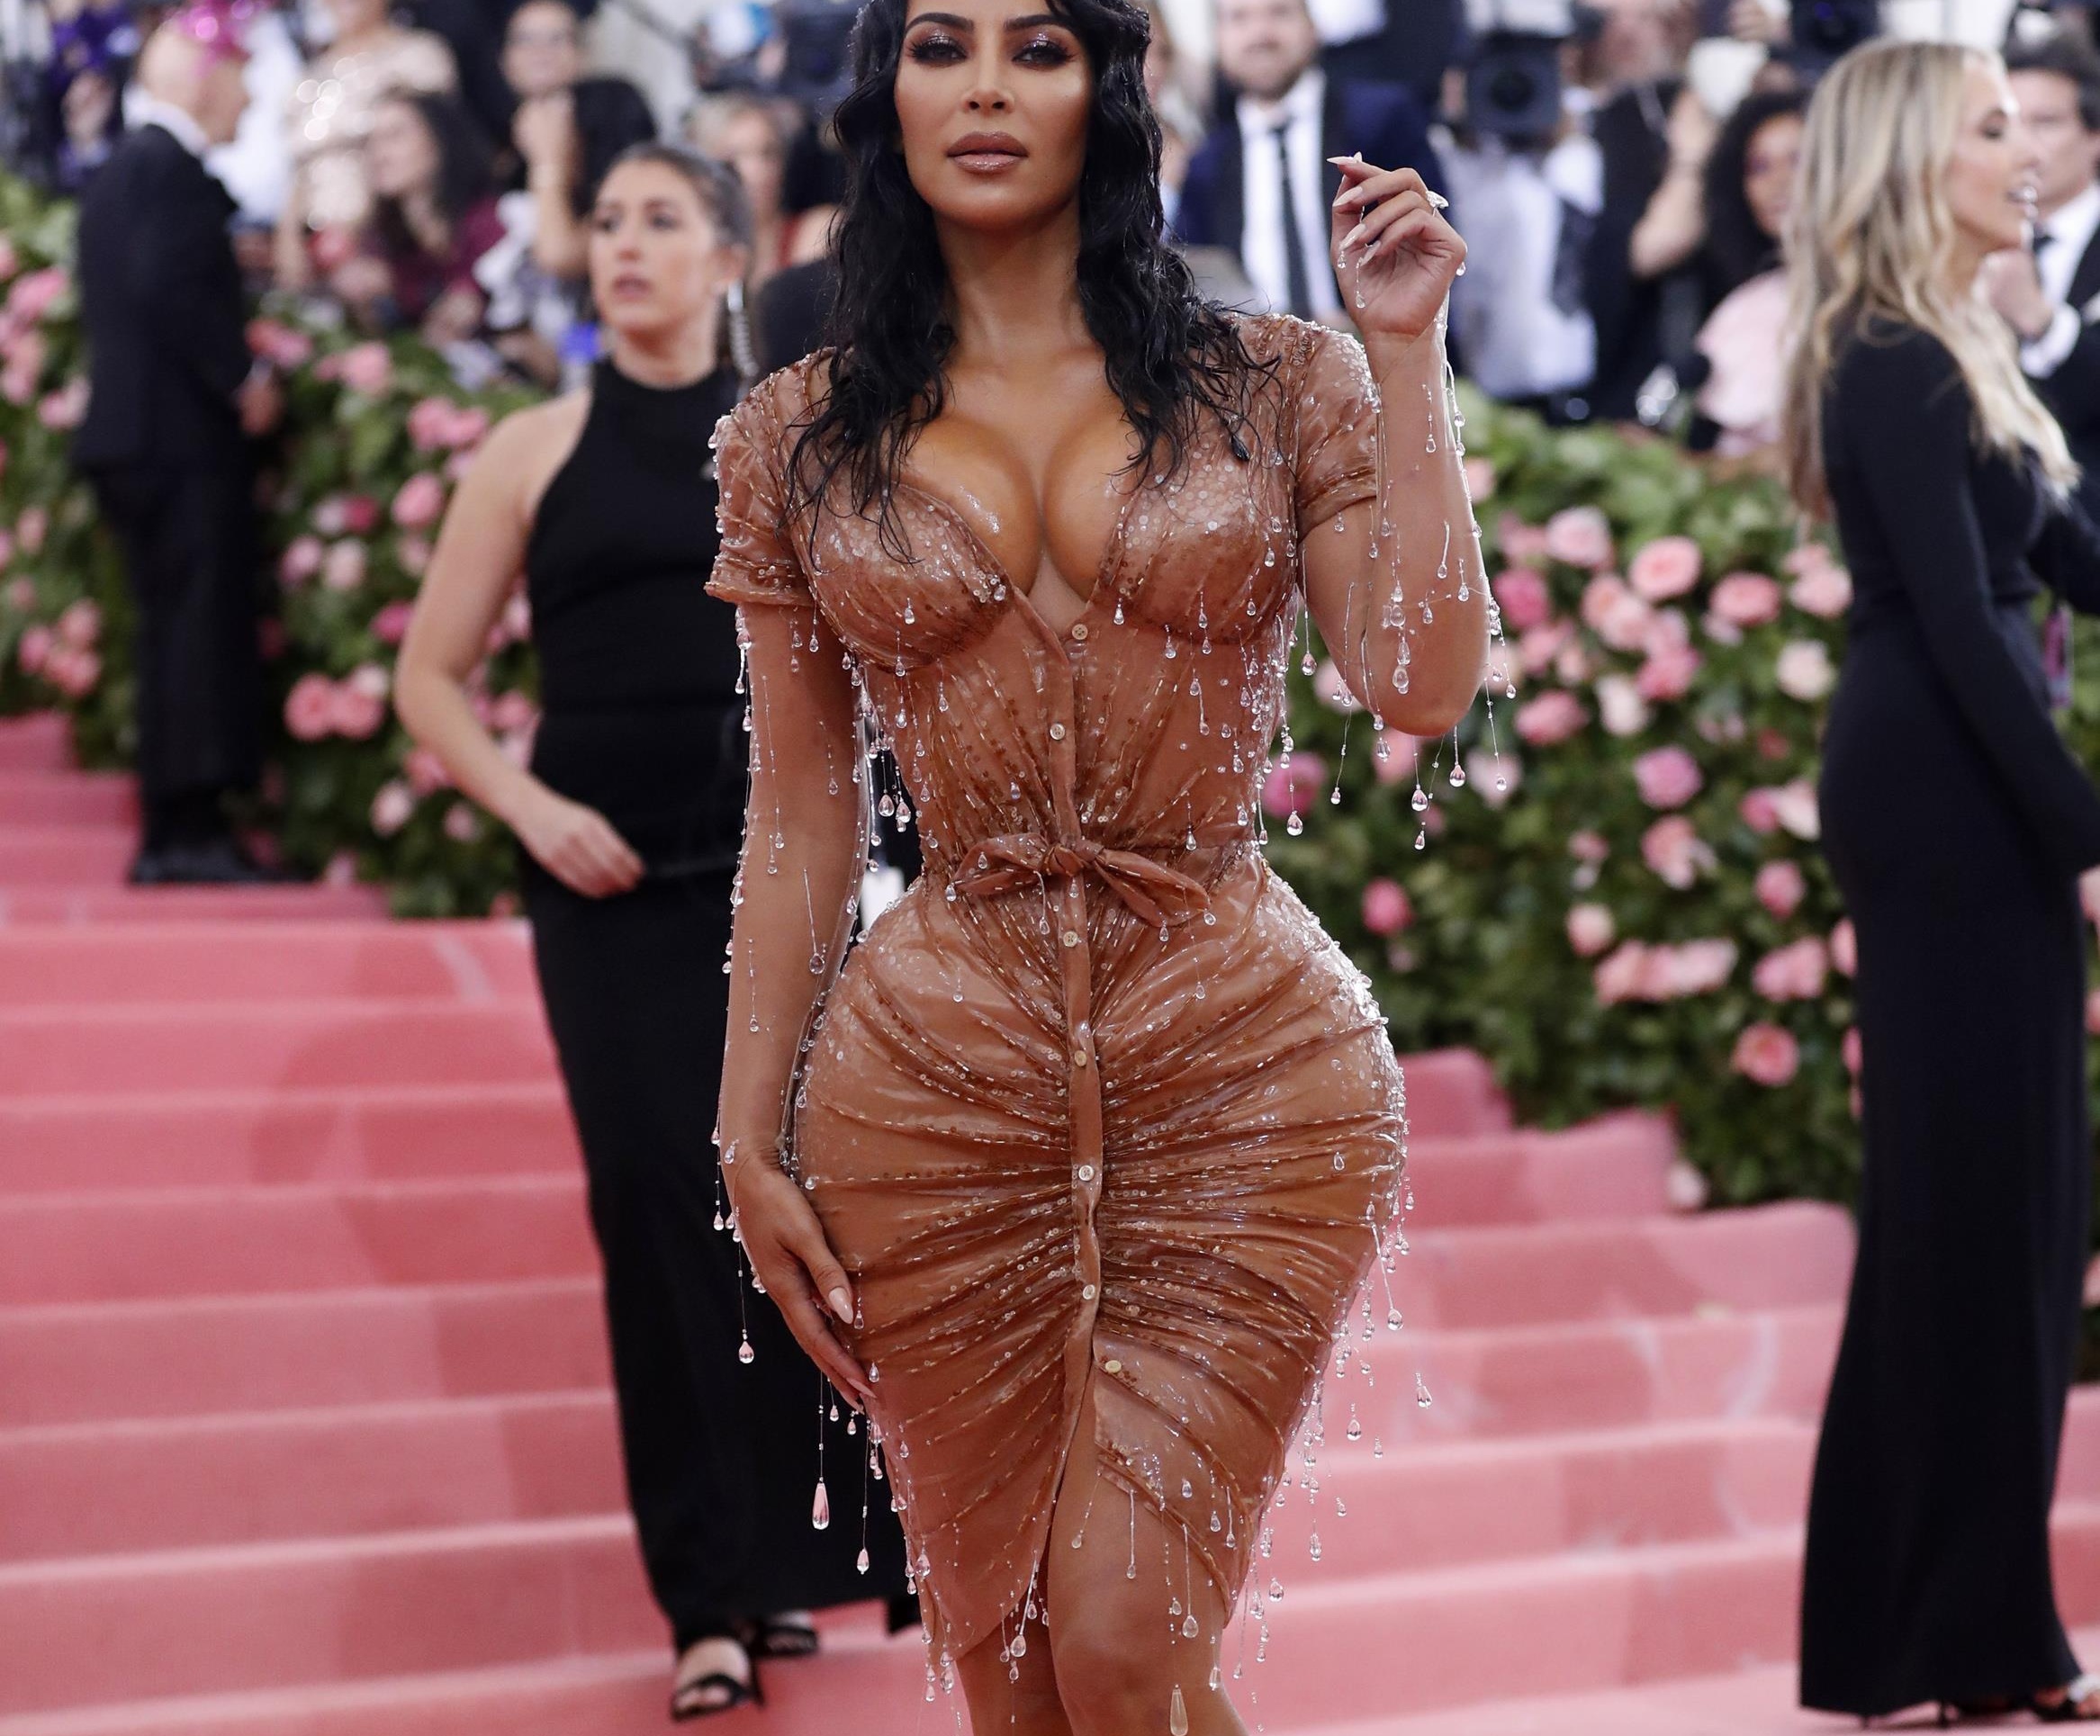 Met Gala: H Kim Kardashian και η στενή μέση της προκάλεσαν… αντιδράσεις! Φωτογραφίες